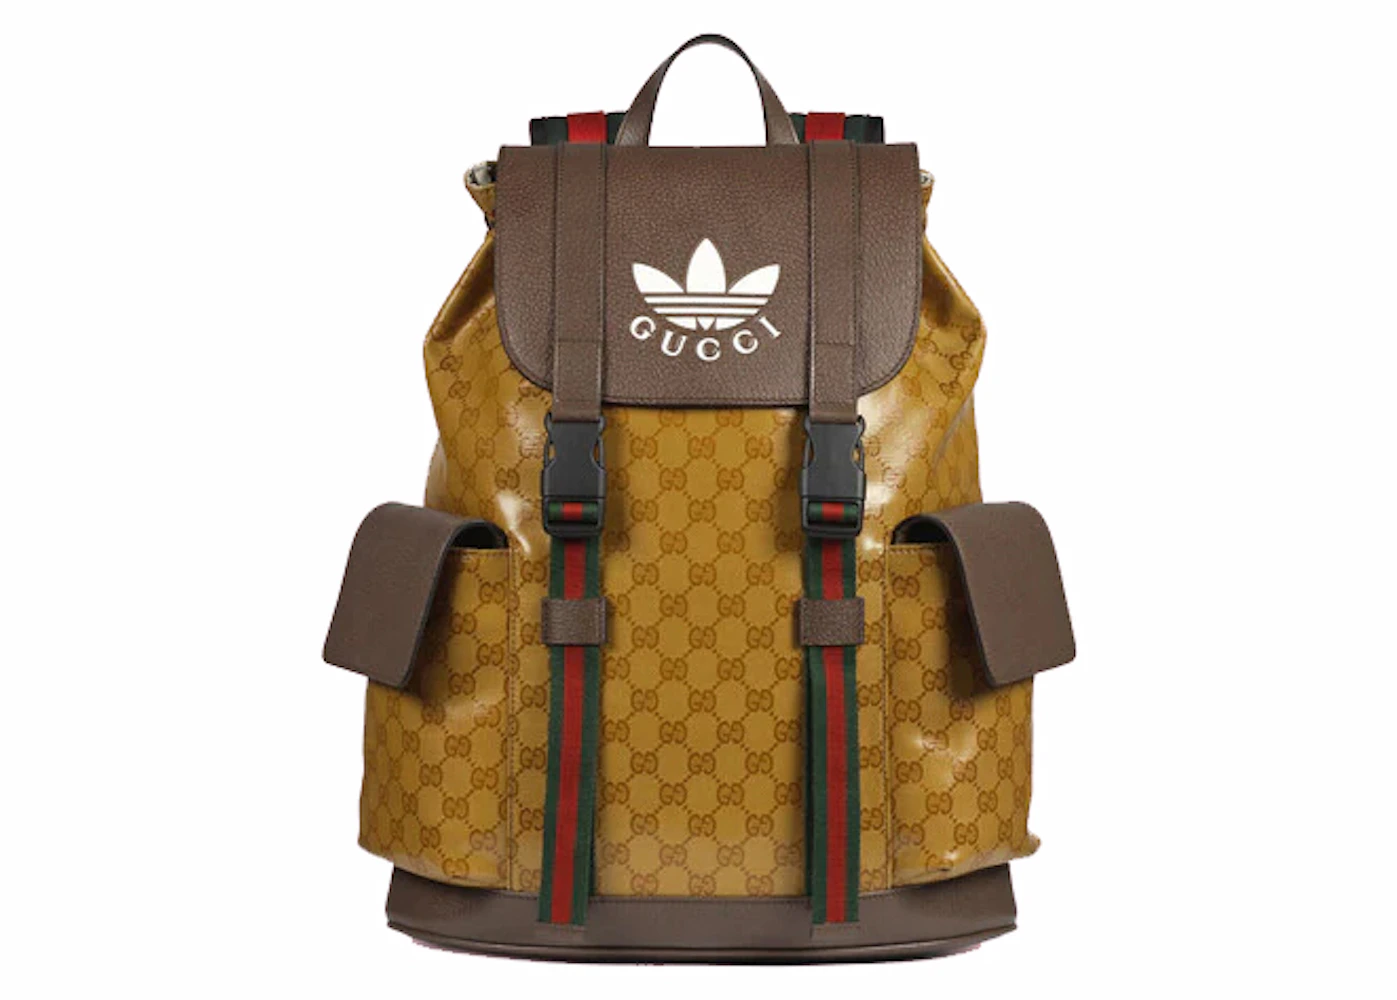 Adidas x Gucci Golf Bag